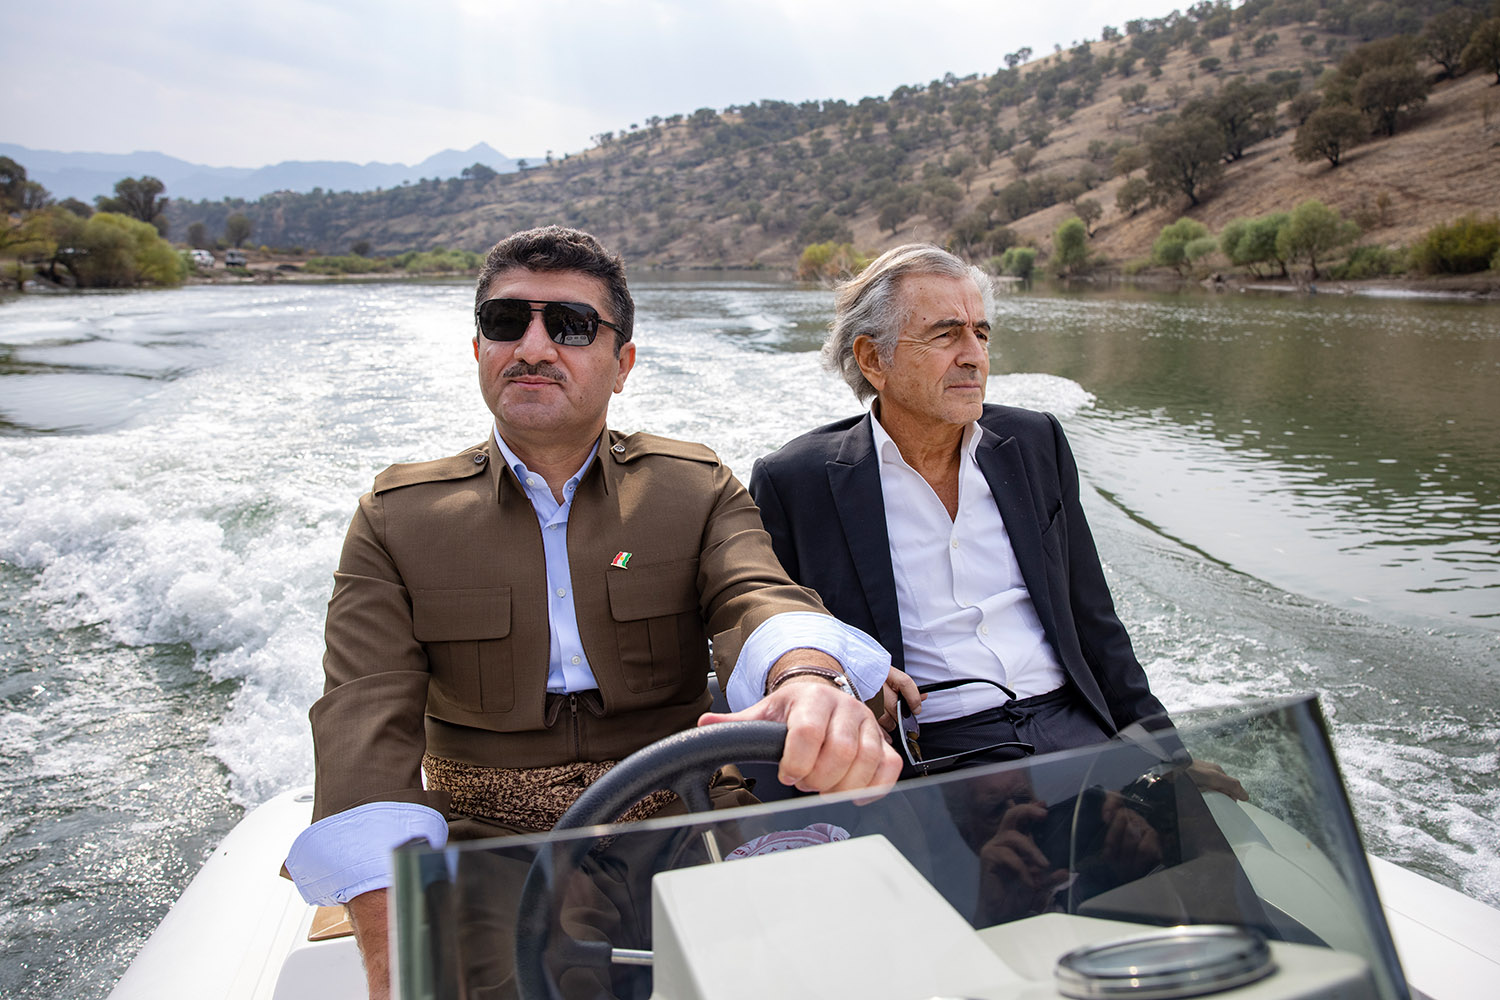 Sur la rivière de Barzan en novembre 2020, BHL accompagne le général Sirwan Barzani sur un bateau.